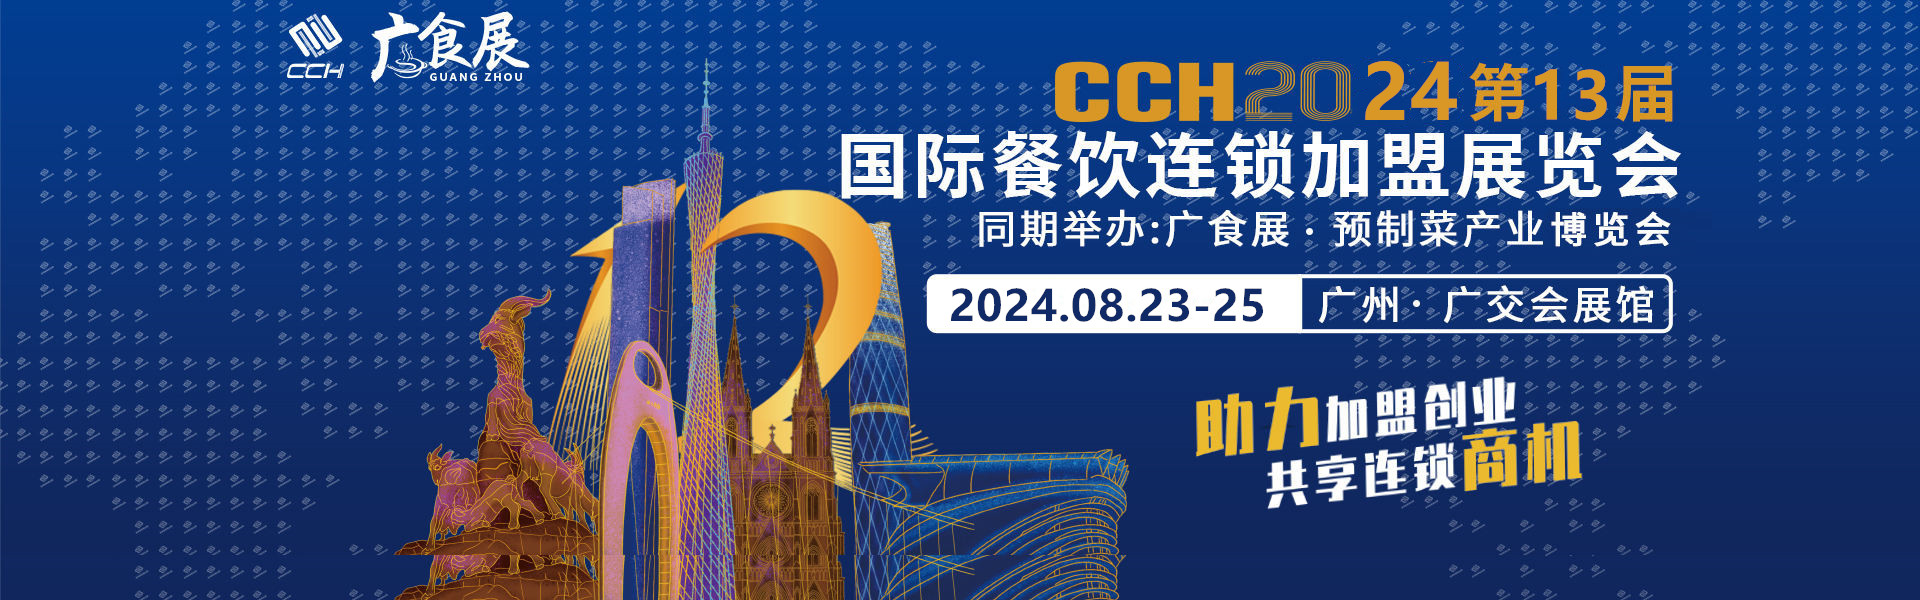 2024第13届CCH广州餐饮加盟展时间地点